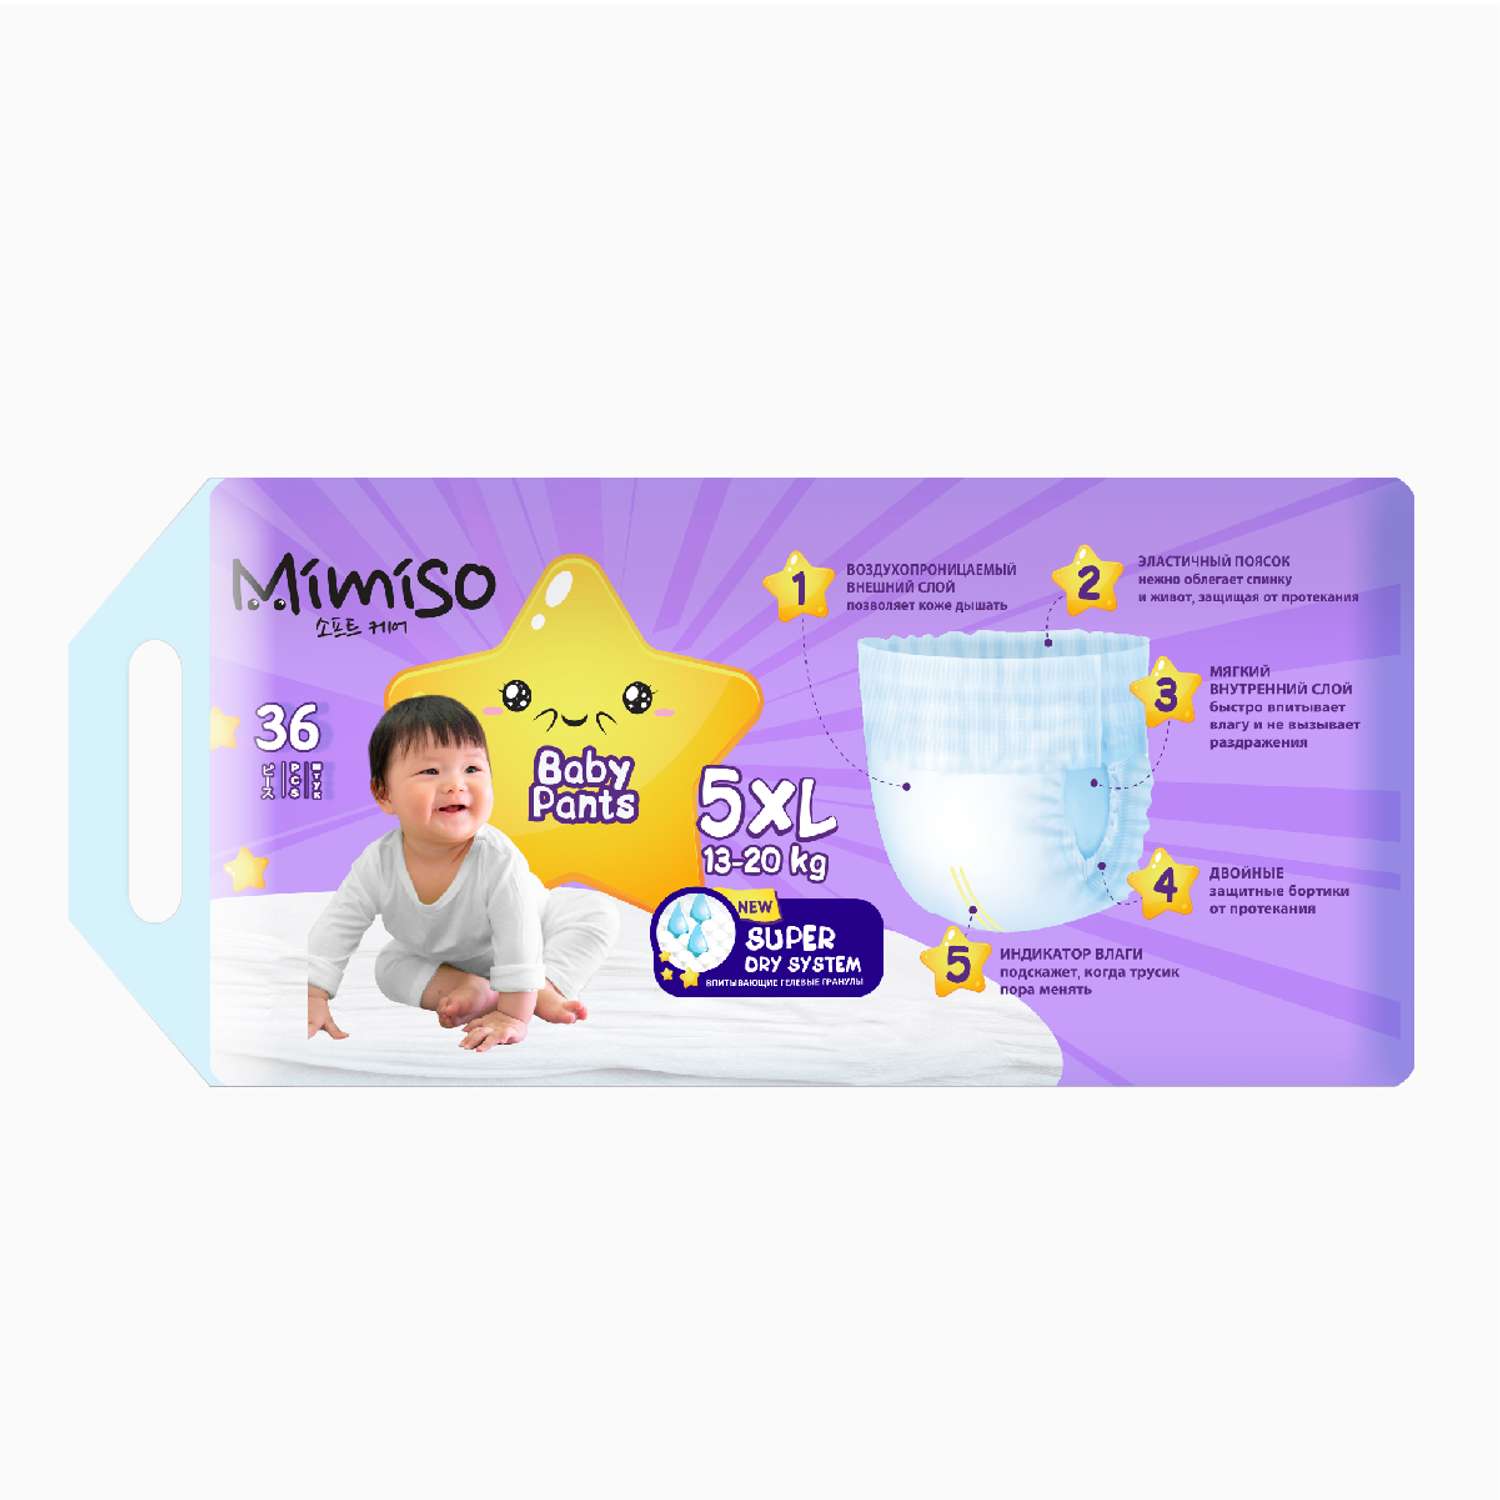 Трусики Mimiso одноразовые для детей 5/XL 13-20 кг 36шт - фото 2